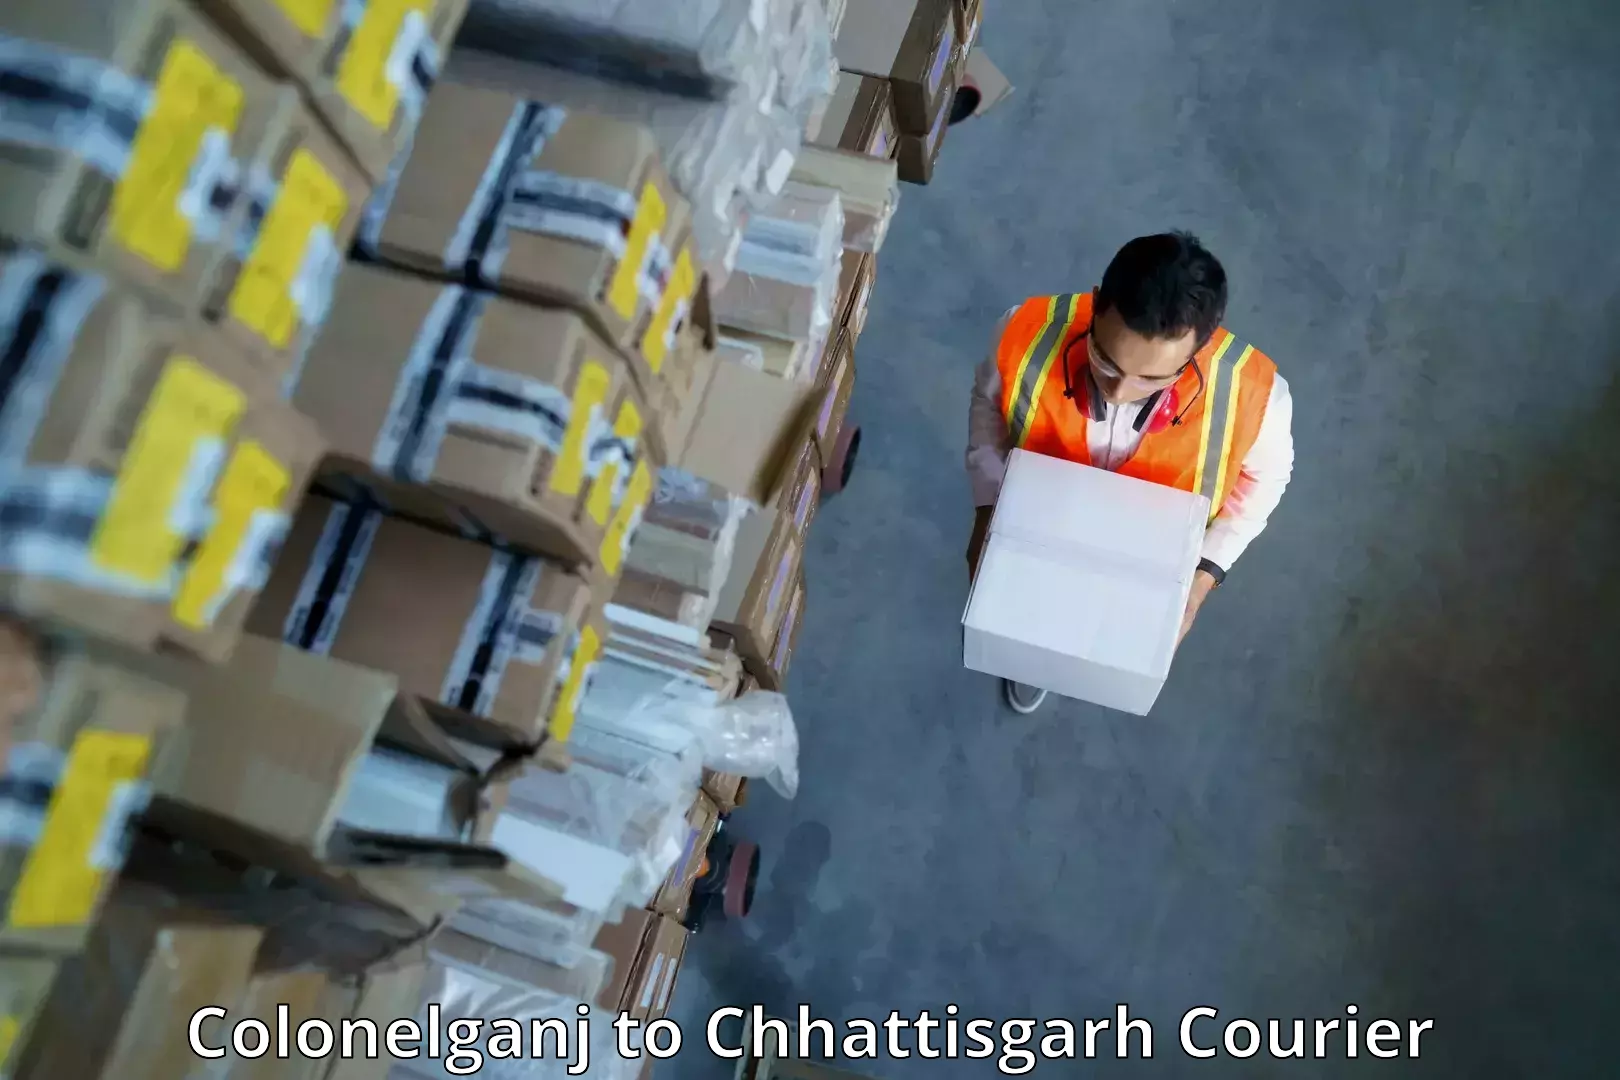 Rapid shipping services in Colonelganj to Patna Chhattisgarh